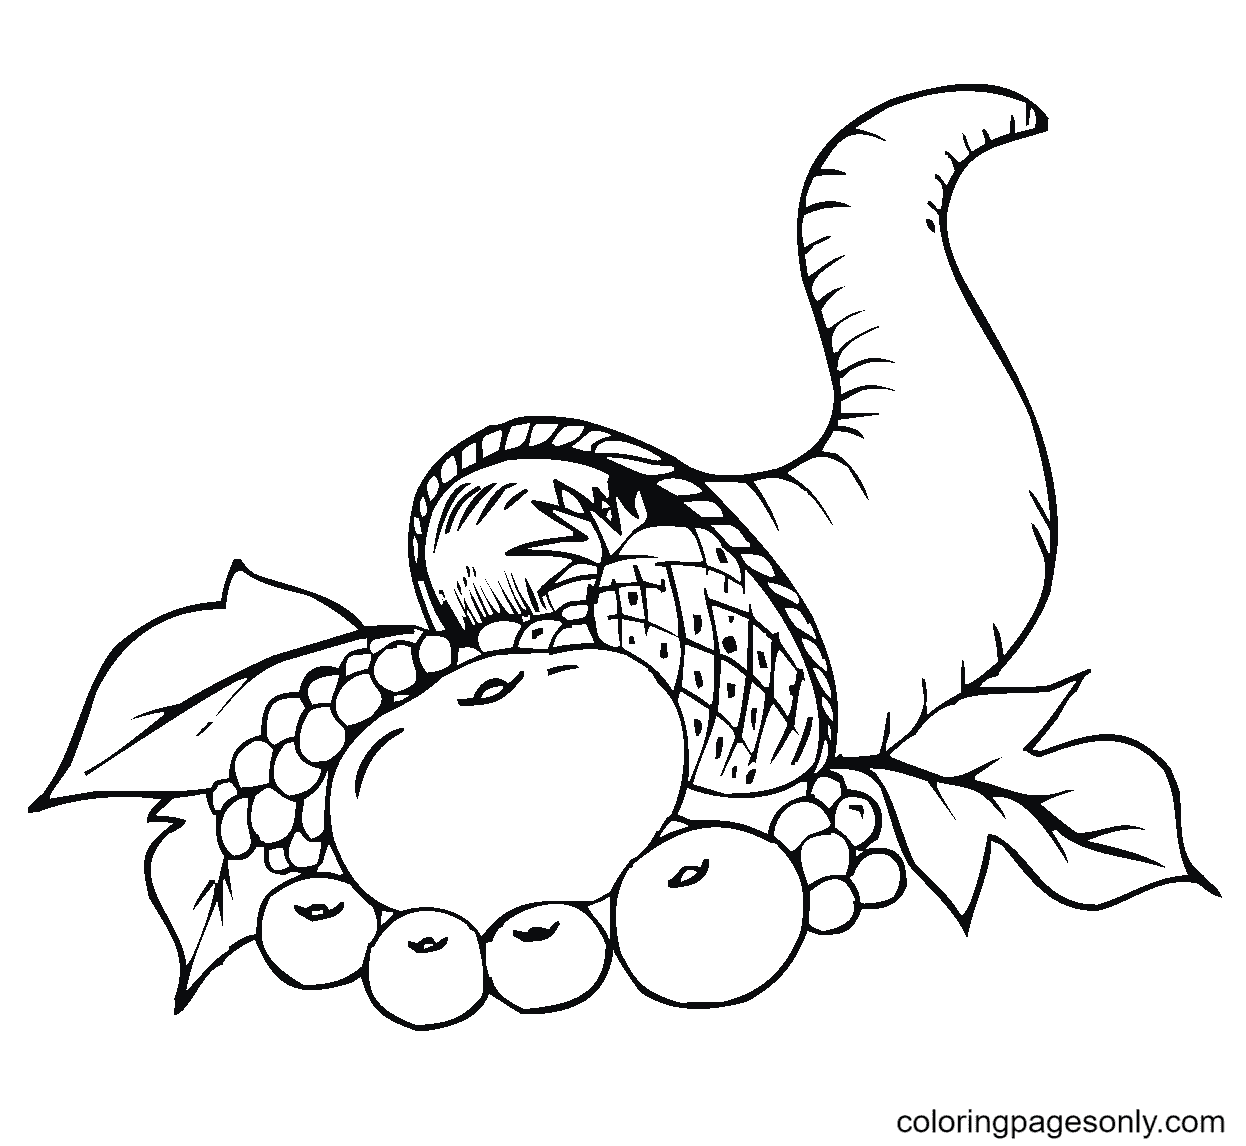 Desenho para colorir do chifre de amalteia